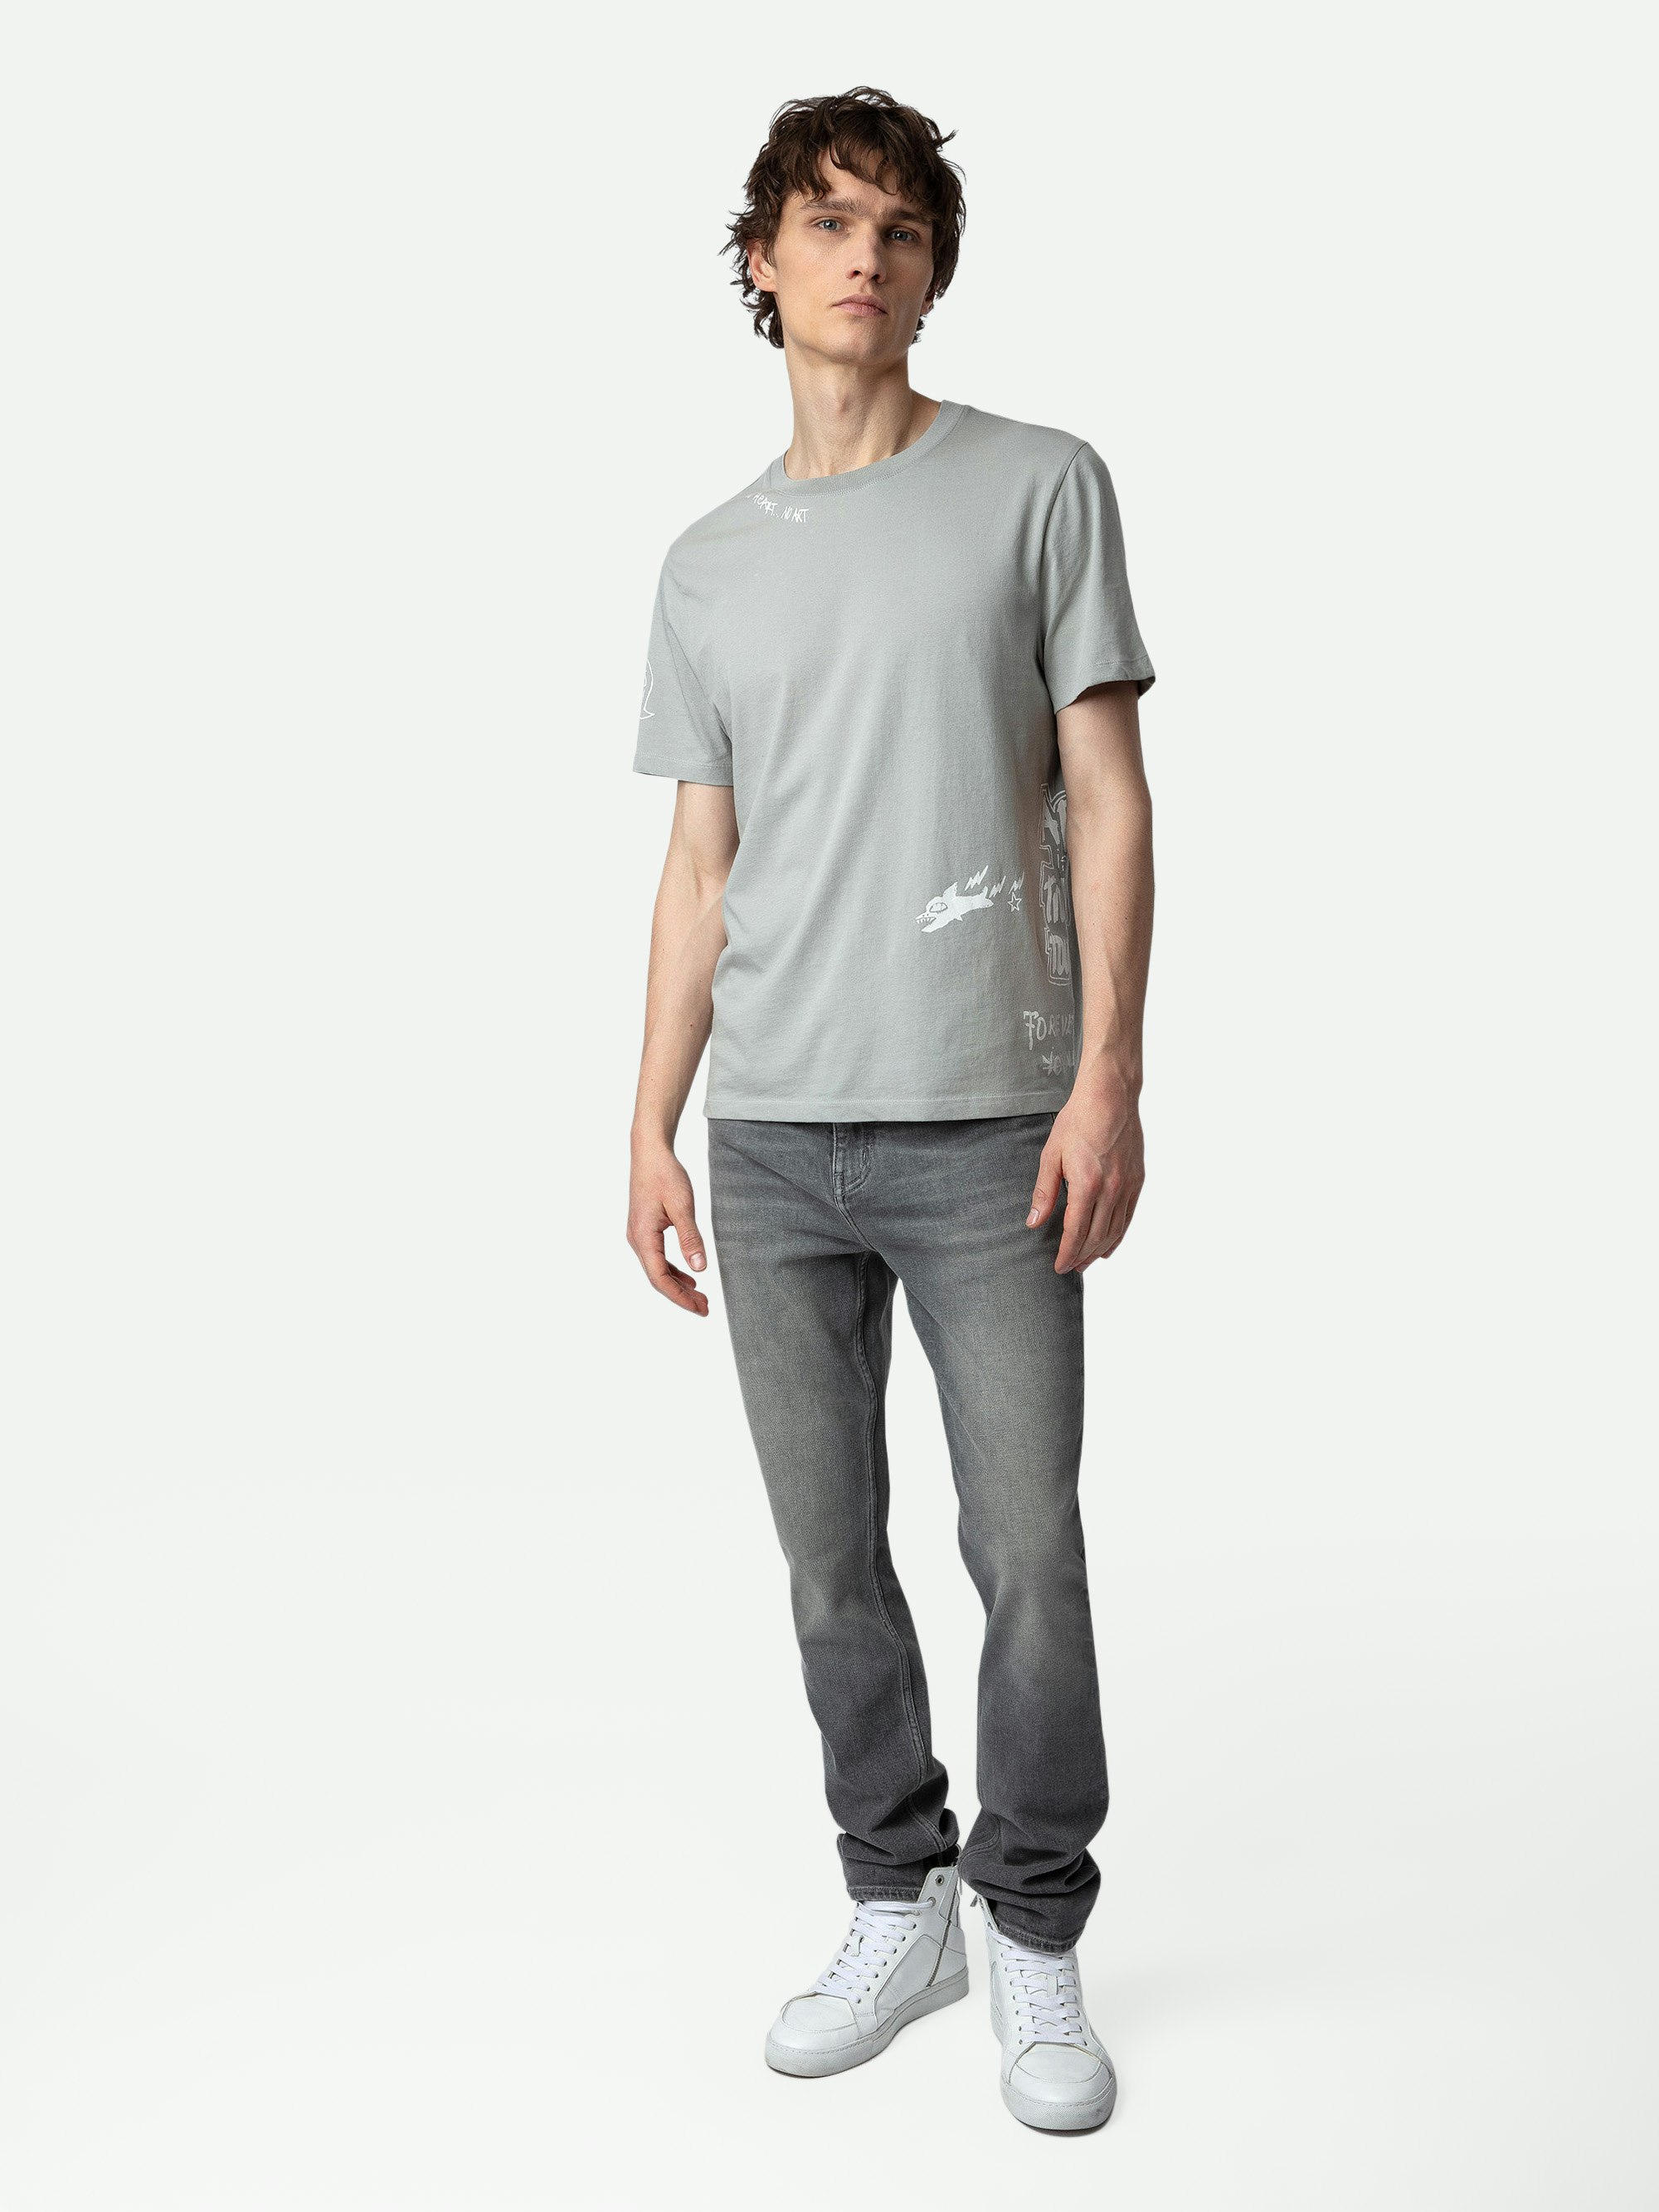 Camiseta Ted Tag - Camiseta de algodón ecológico en color gris con detalles decorativos de Humberto Cruz.